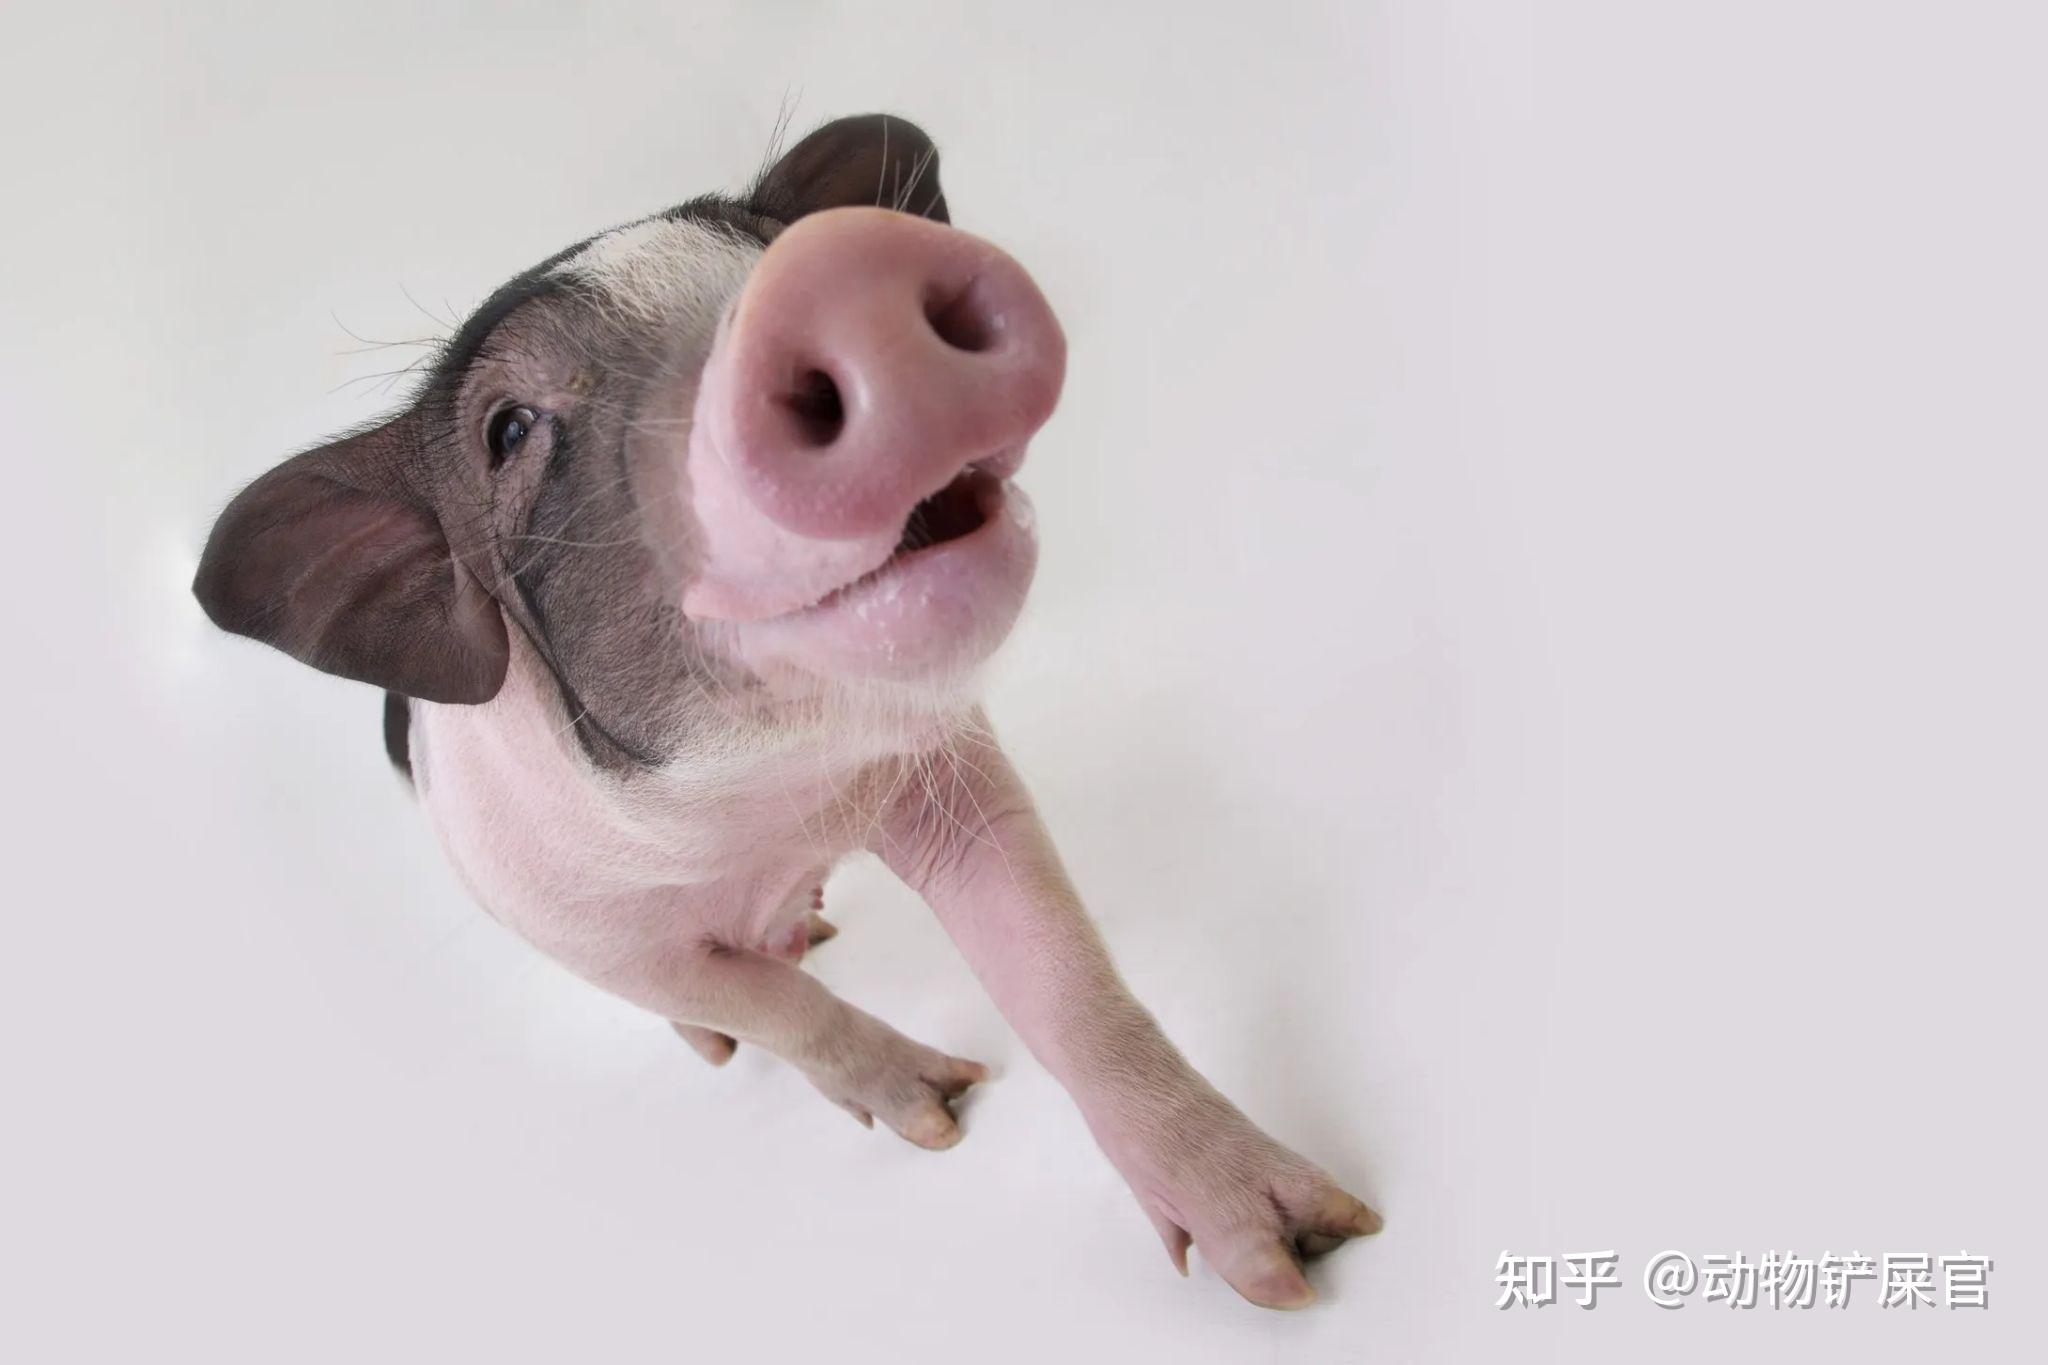 杜洛克种猪 加系种猪 四川天兆猪业股份有限公司